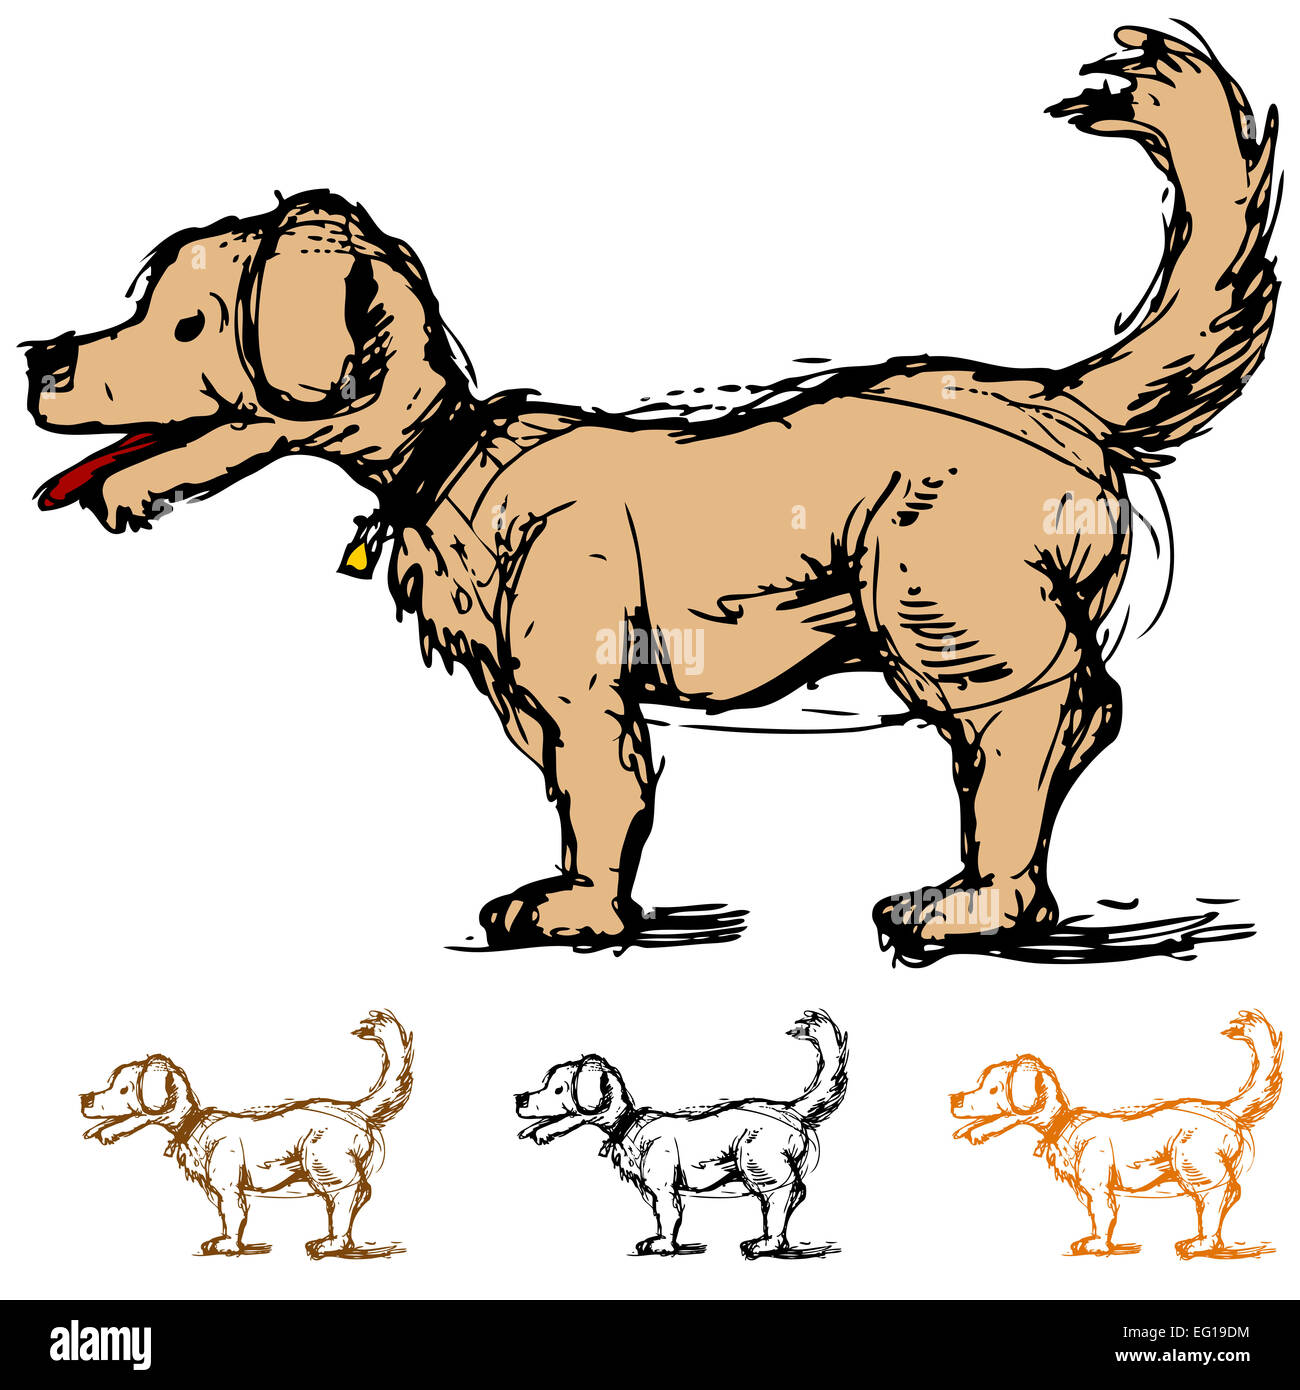 L'image d'un croquis d'un dessin de chien dans une vue de profil. Banque D'Images